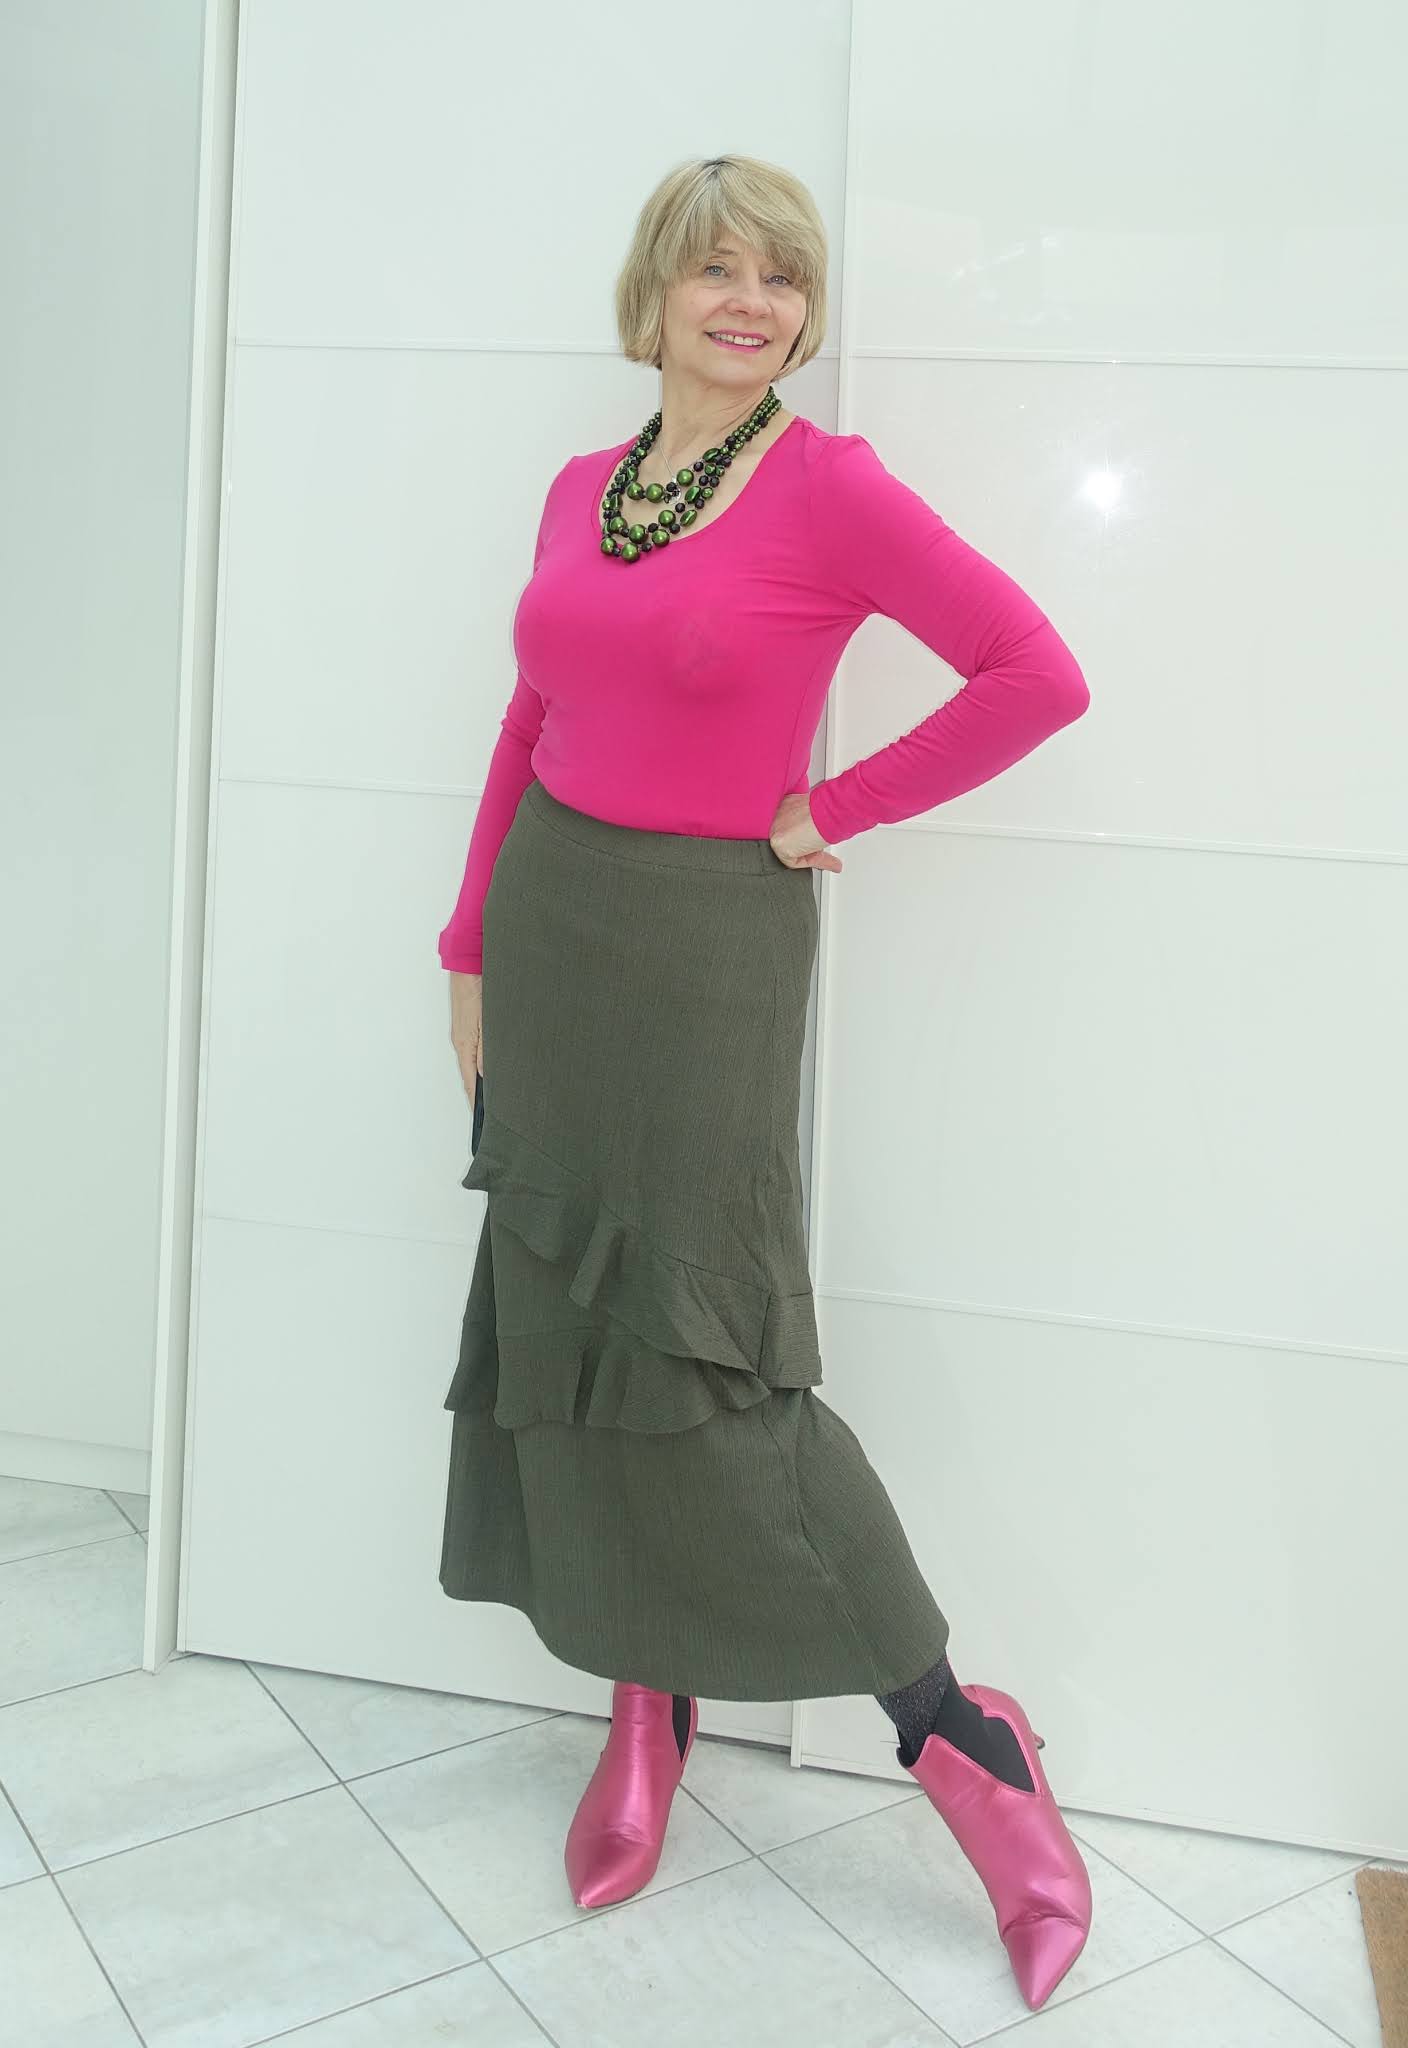 Camo Skirt, Confident Twosday Linkup & BIG ANNOUNCEMENT - I do